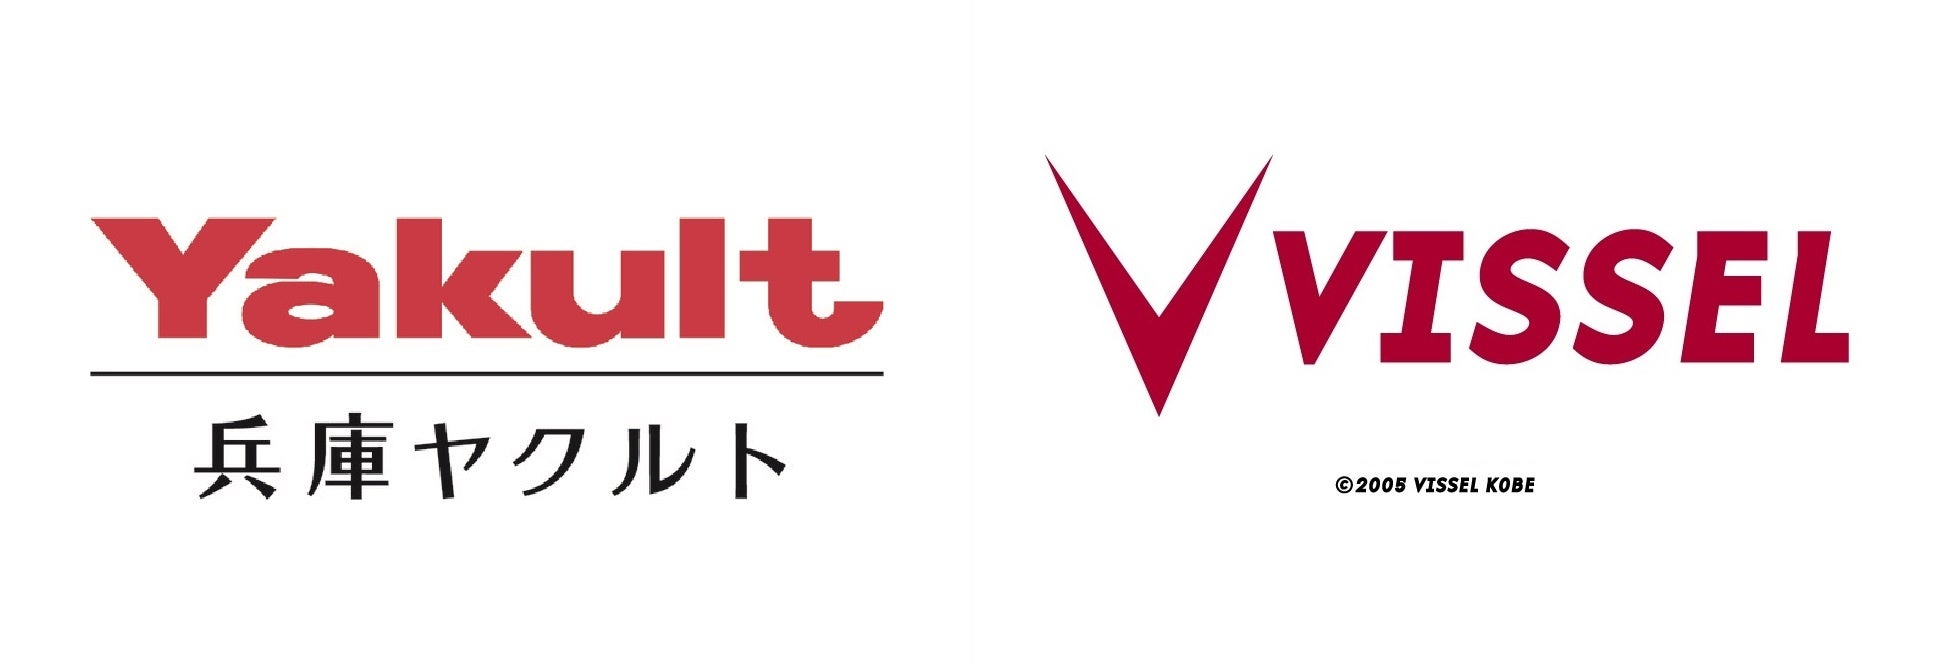 兵庫ヤクルト販売株式会社×ヴィッセル神戸オフィシャルパートナー契約を締結